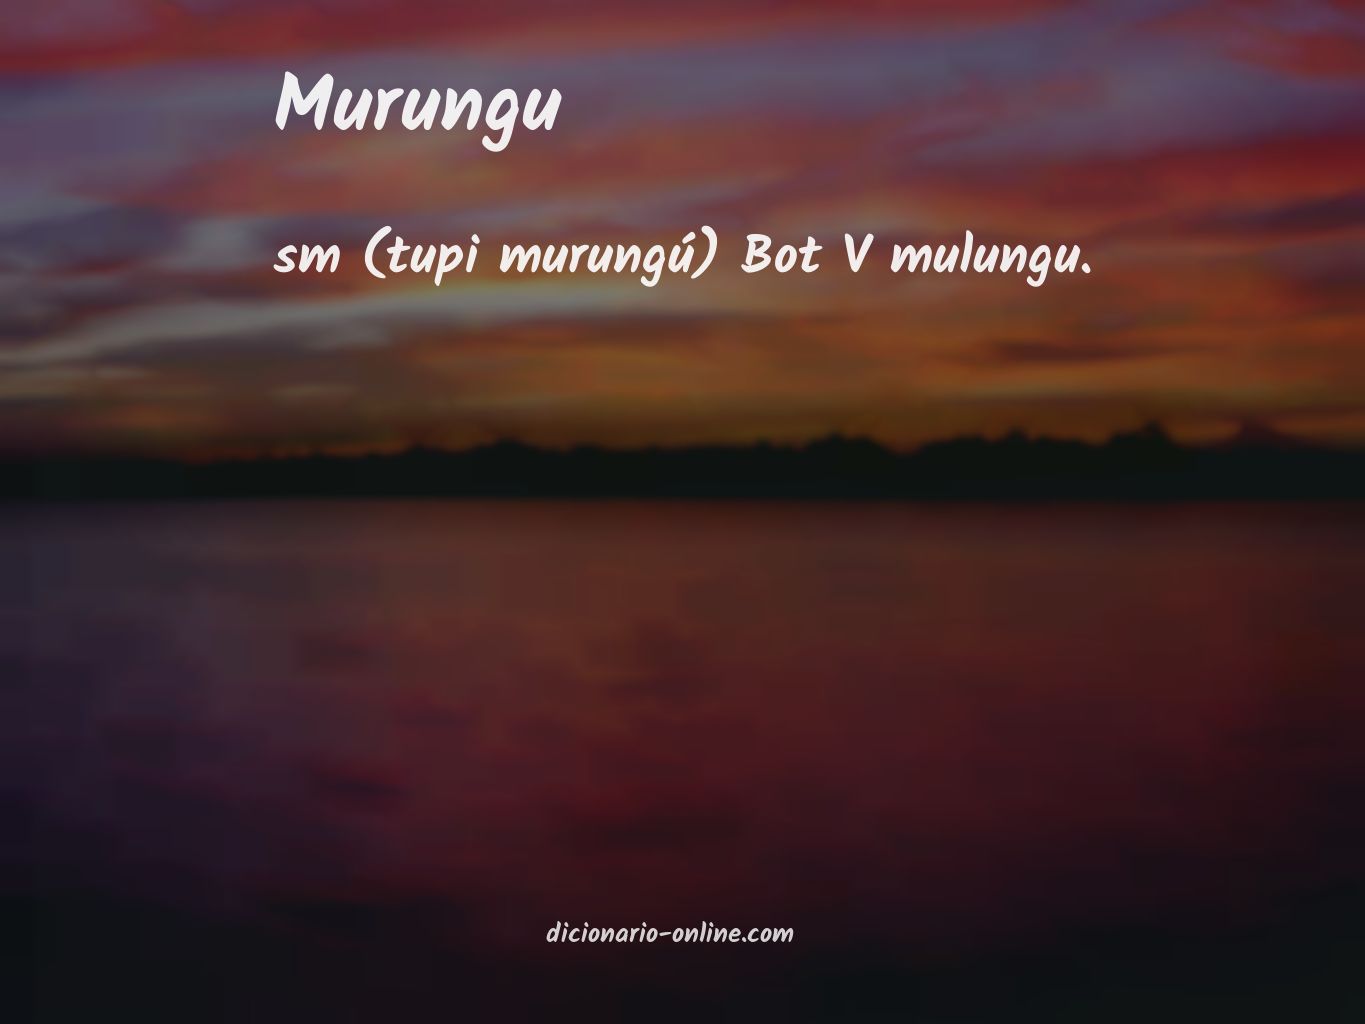 Significado de murungu